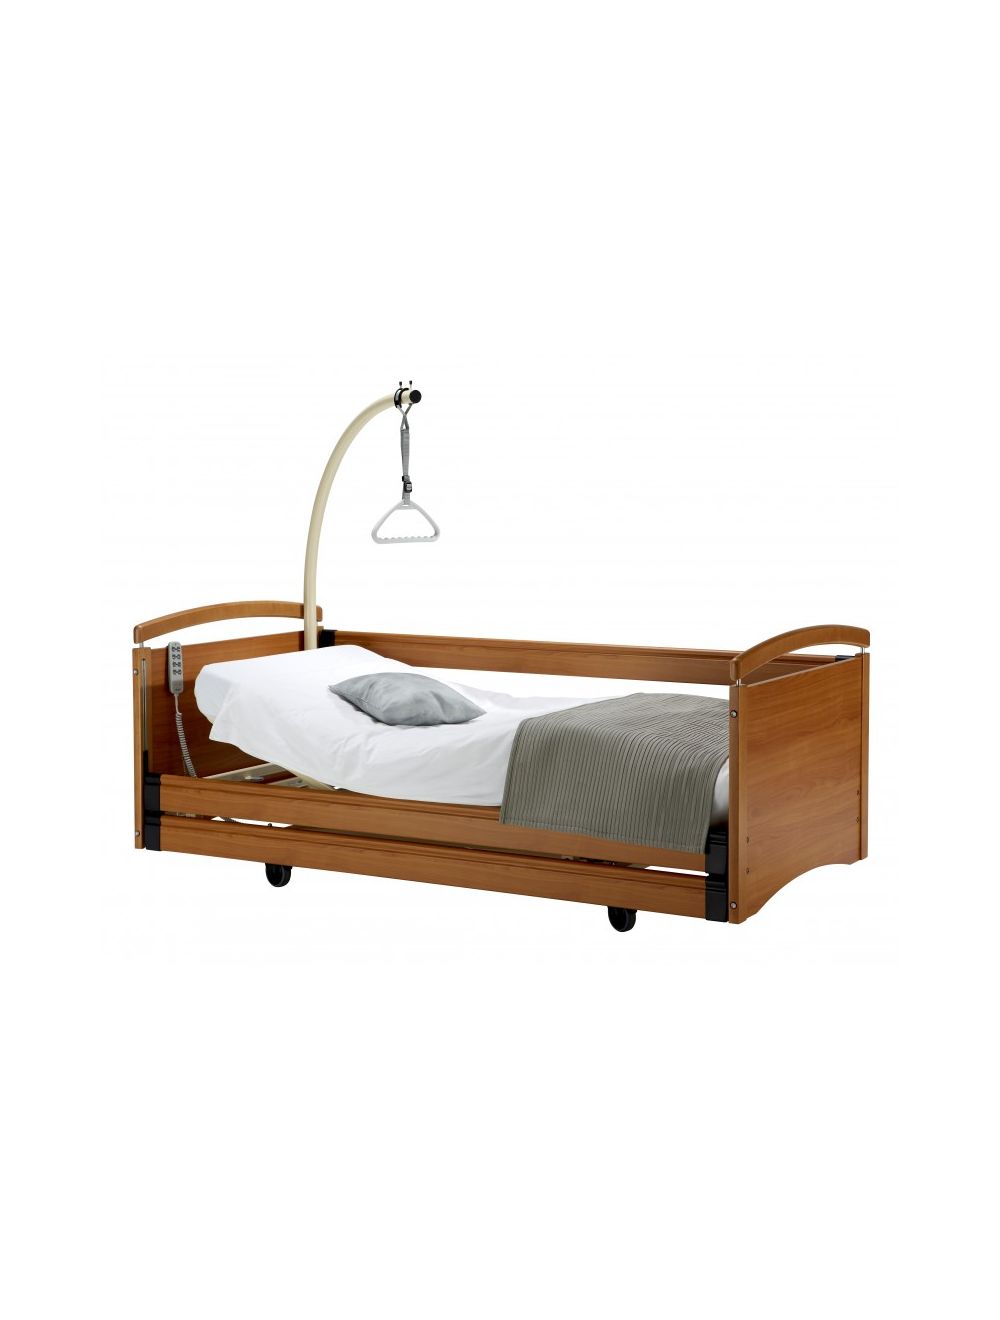 Tables de lits : Achat / Vente / Prix - Matériel Médical pour votre chambre